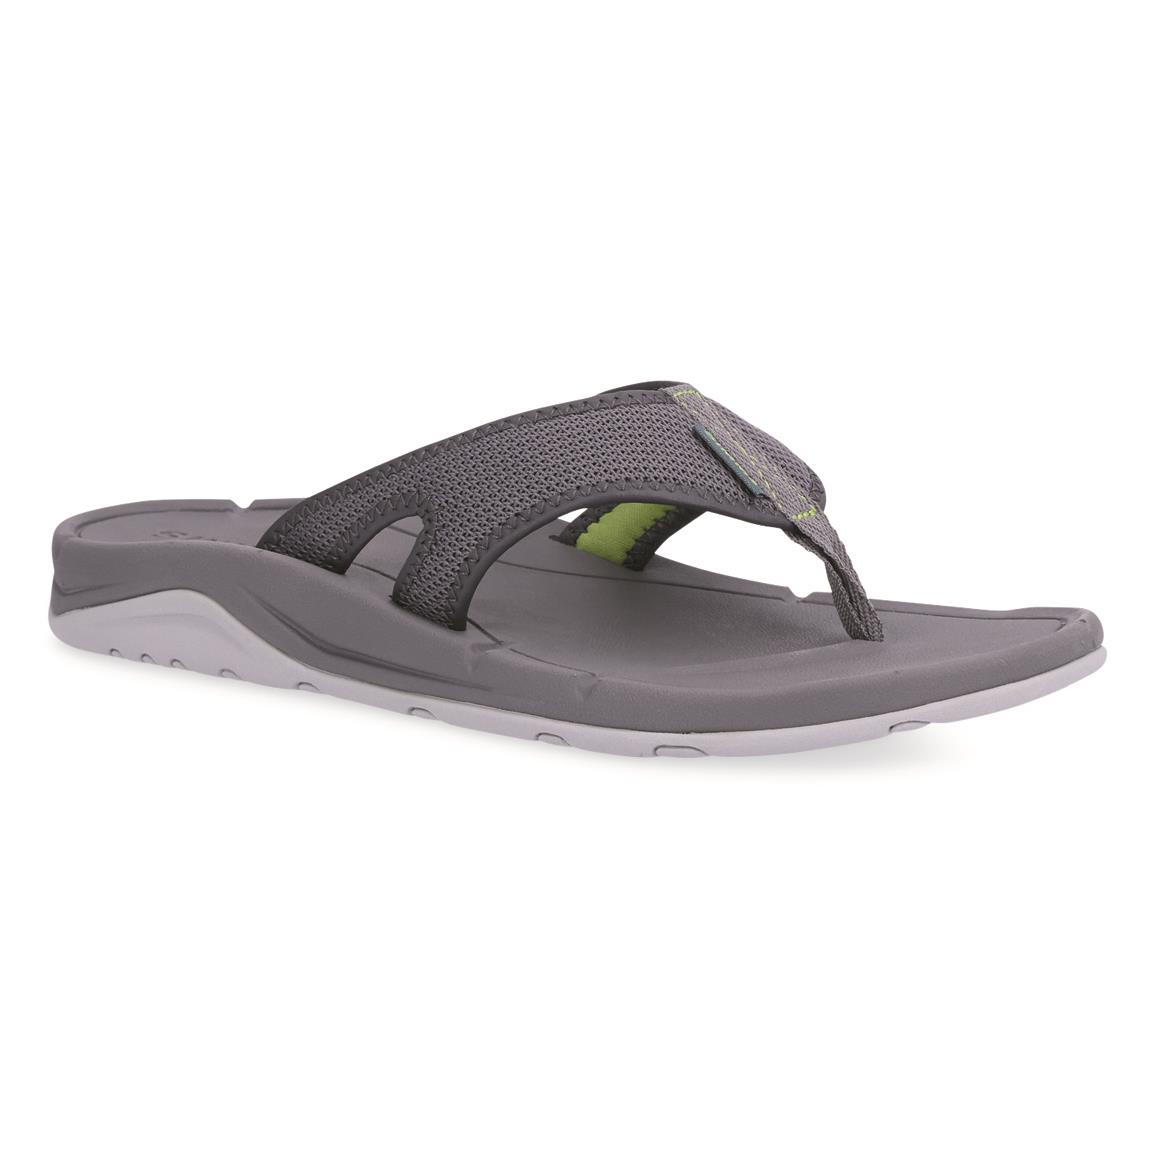 Simms Challenger Flip Flop Sandals, Lichen